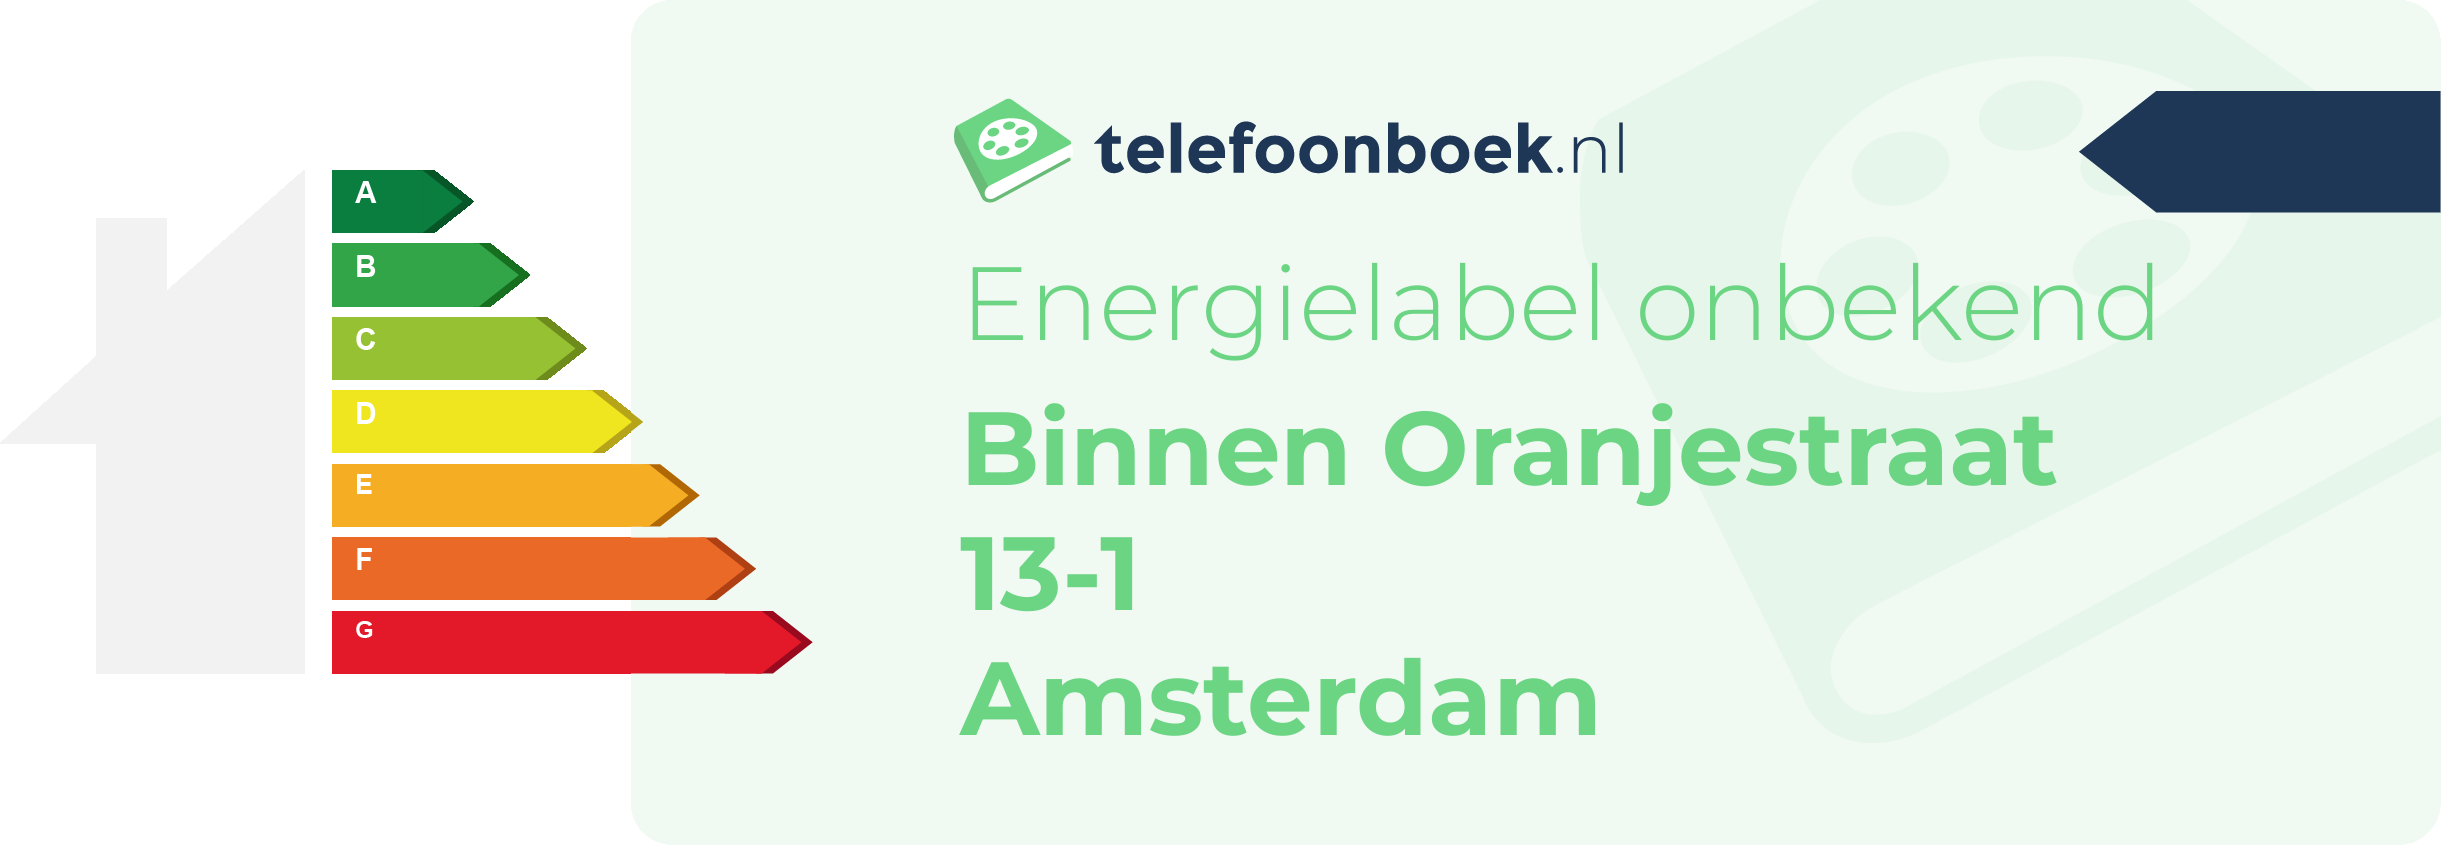 Energielabel Binnen Oranjestraat 13-1 Amsterdam